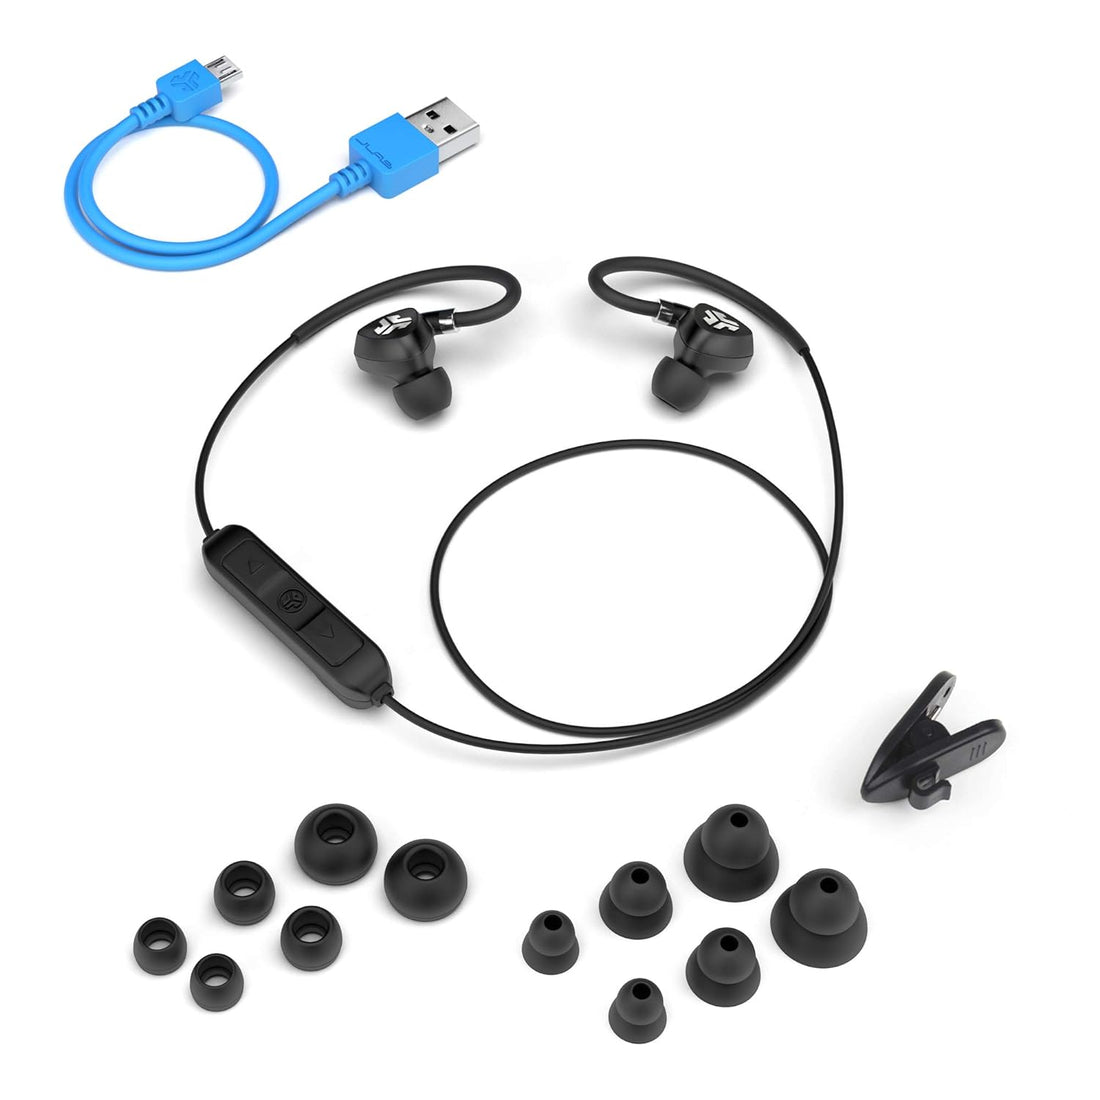 JLAB Audio Fit 10 mm Drivers Wireless 2.0 Bluetooth Sport Earbuds (Black)